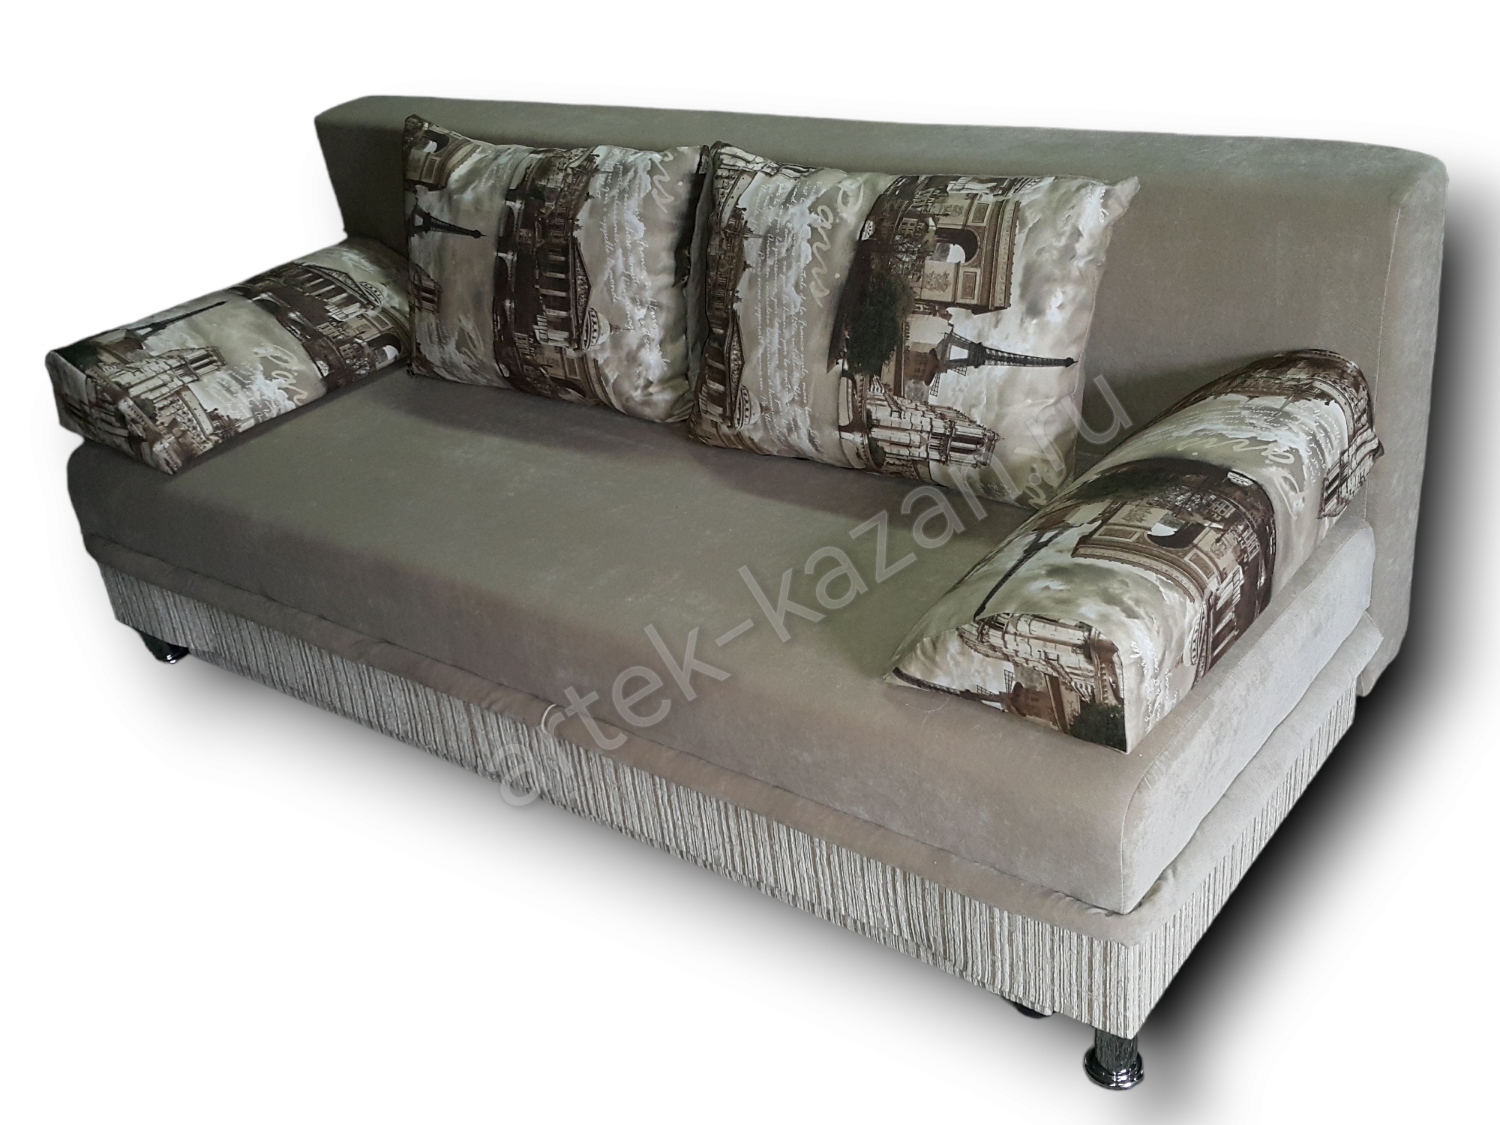 диван еврокнижка Эконом фото № 56. Купить недорогой диван по низкой цене от производителя можно у нас.